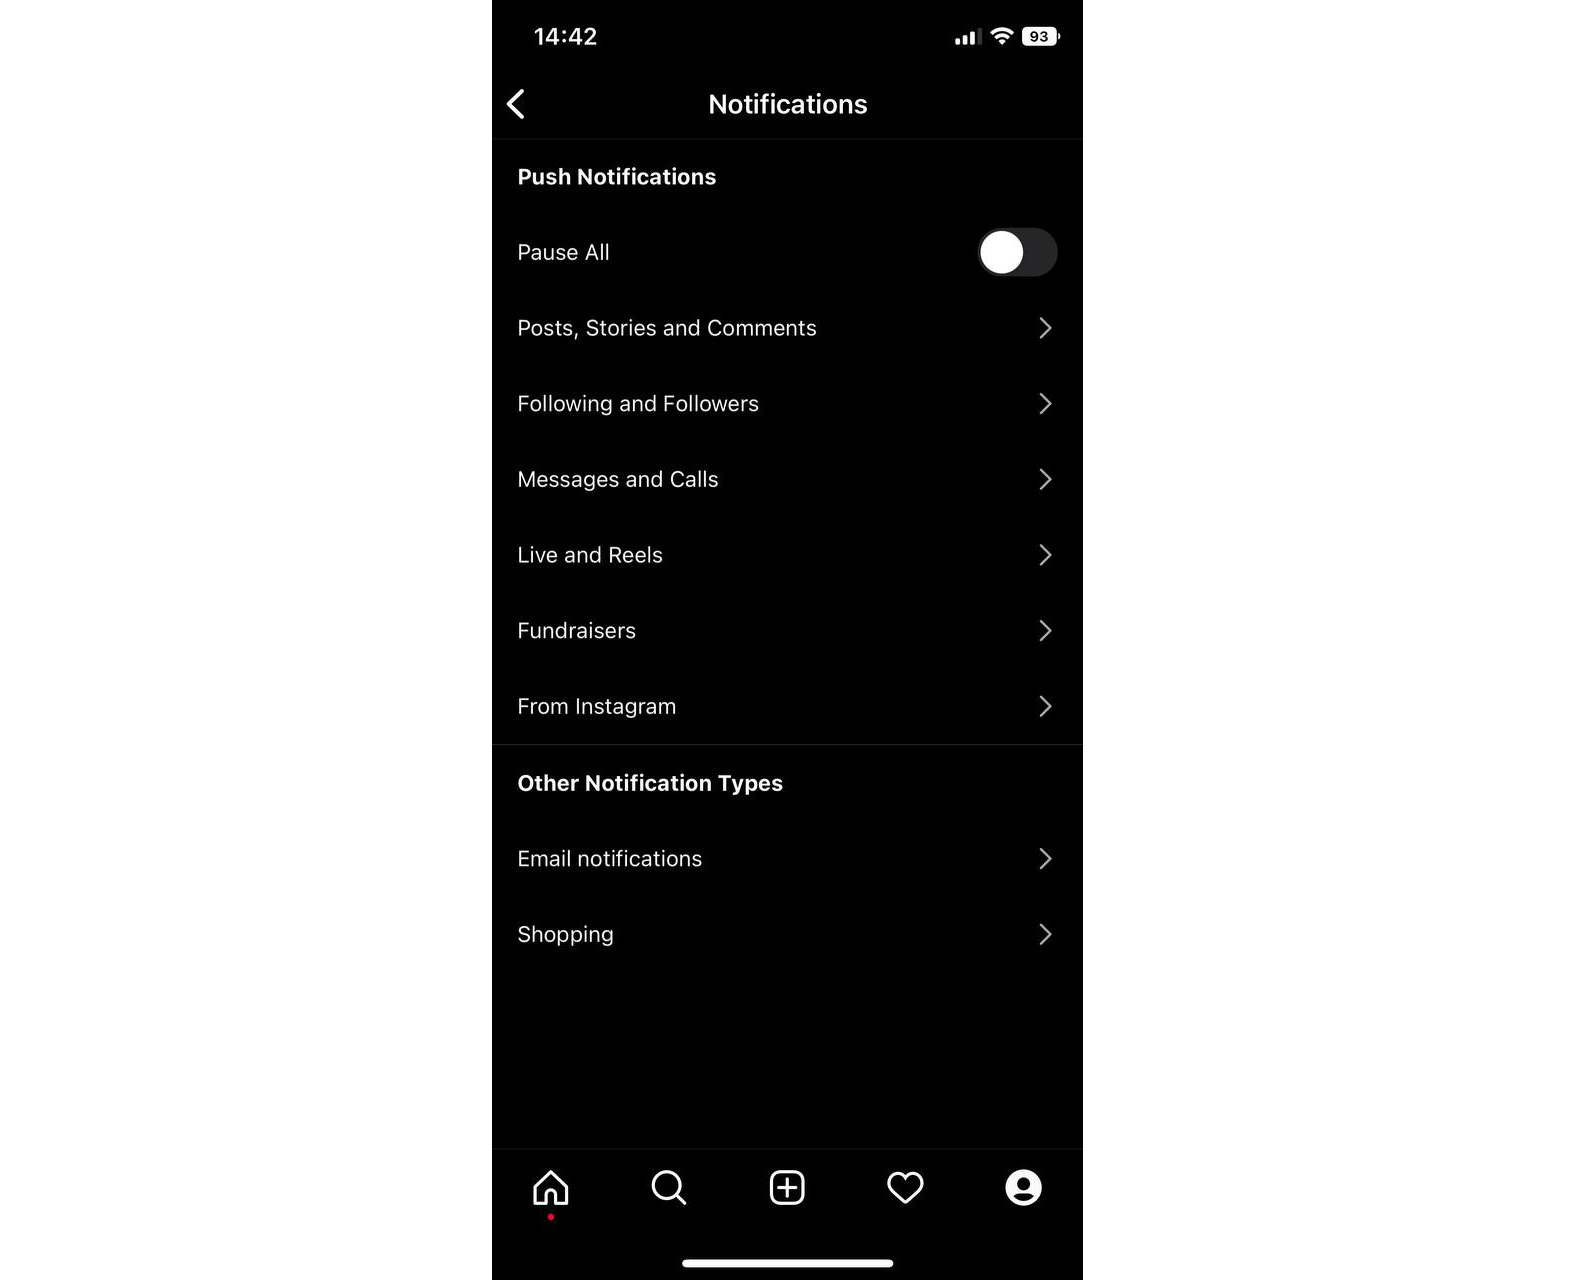 Instagram notification settings menu on iPhone